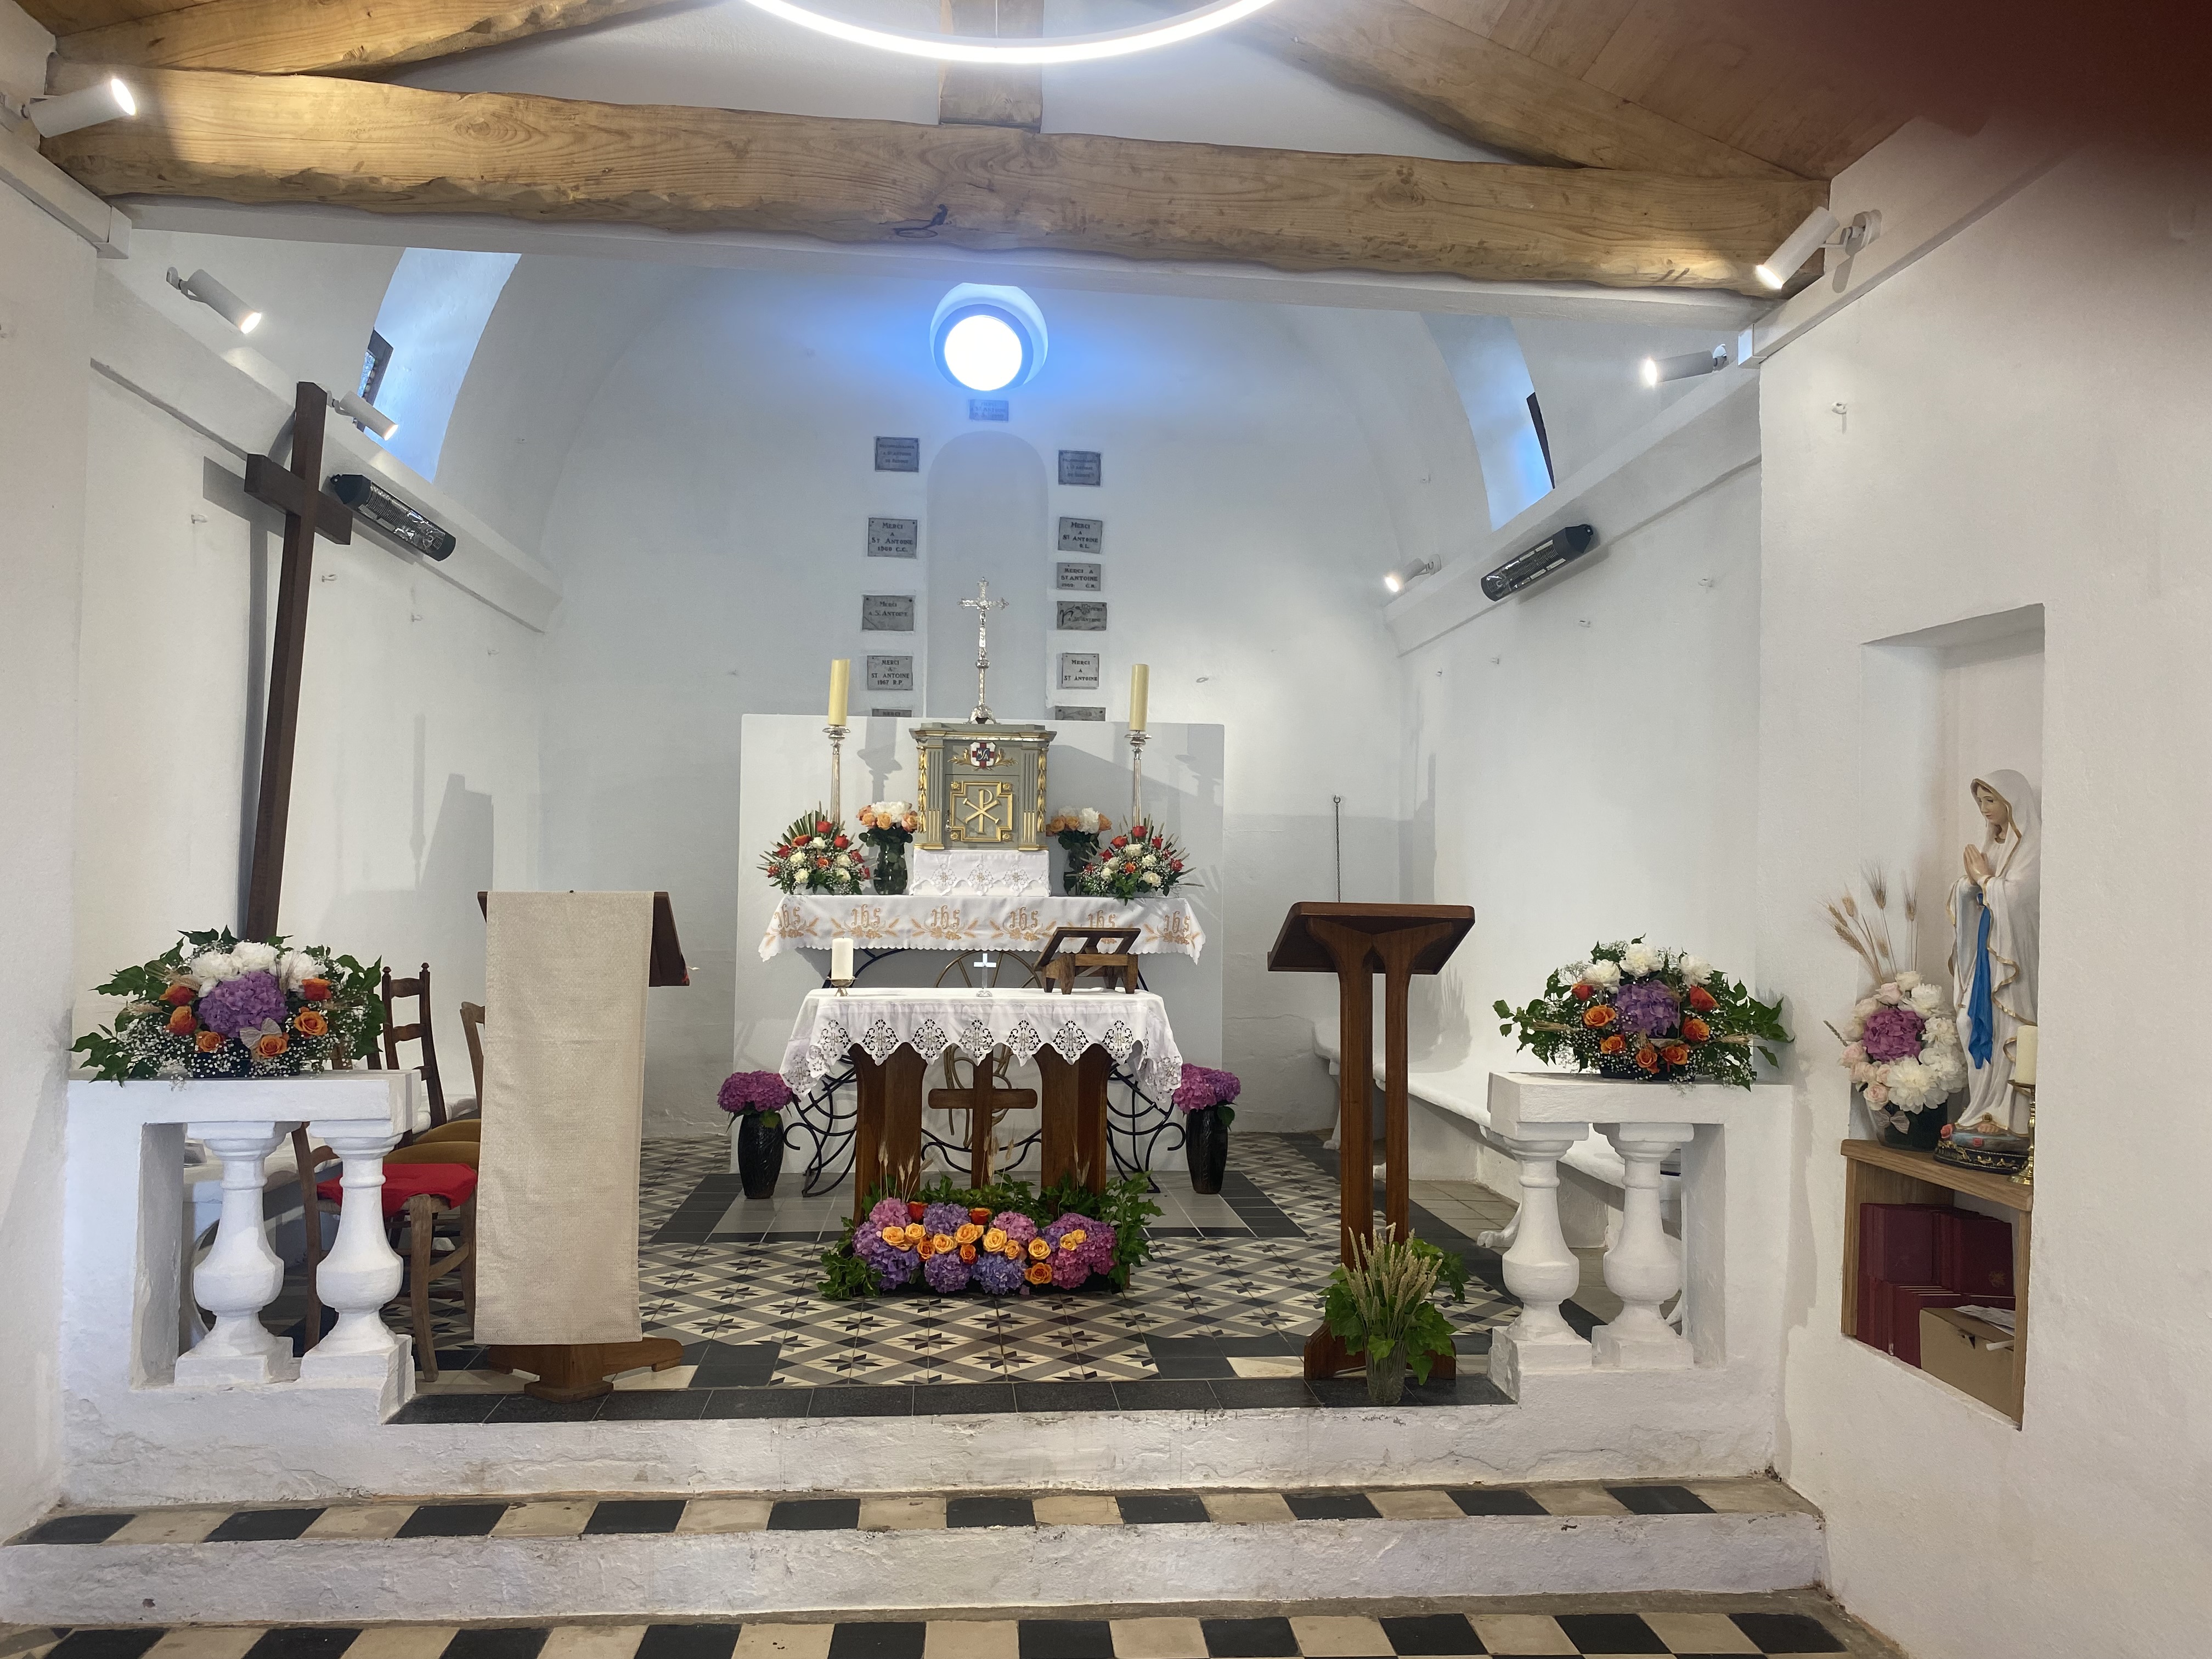 La restauration de la chapelle Saint-Antoine vient d'être achevée il y a quelques jours